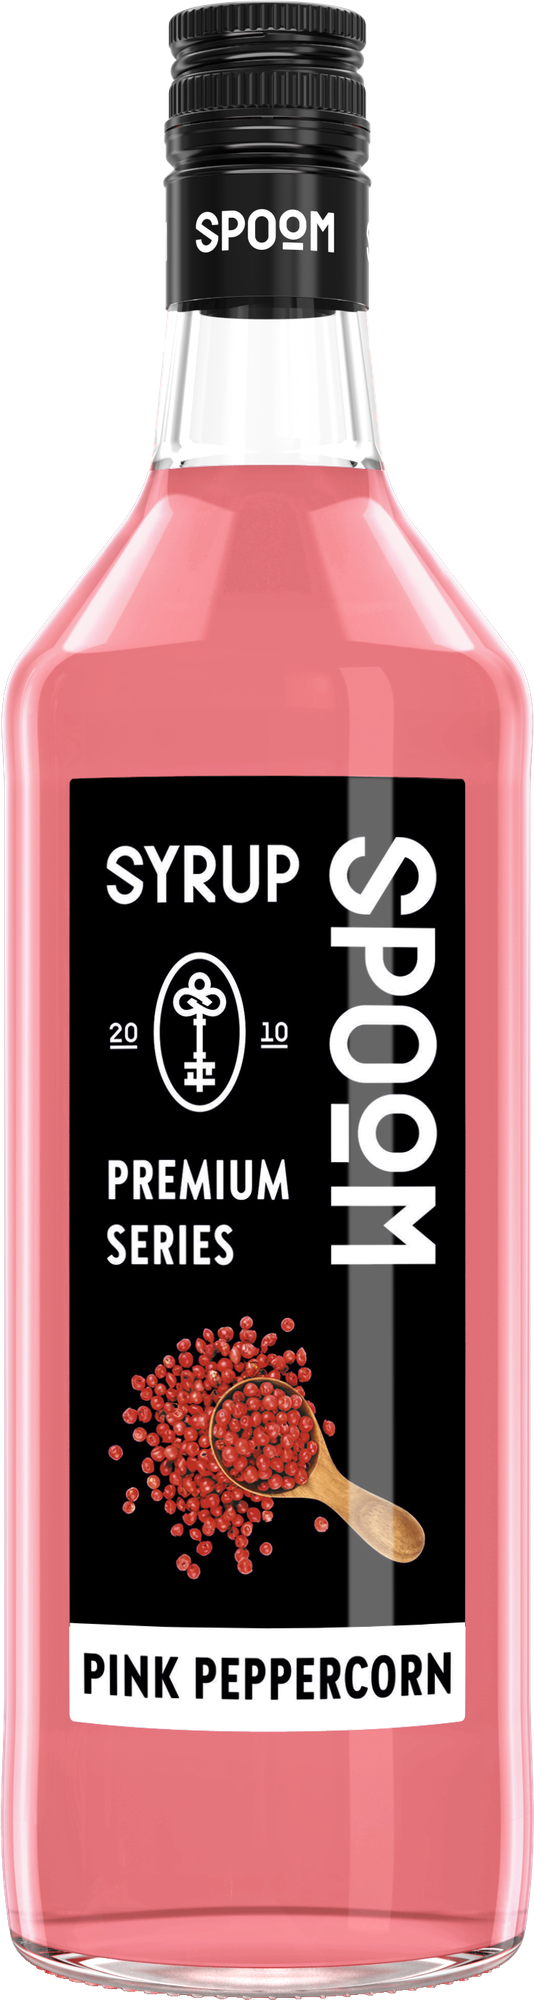 Сироп Spoom Розовый перец, 1 л (для кофе, коктейлей и десертов)